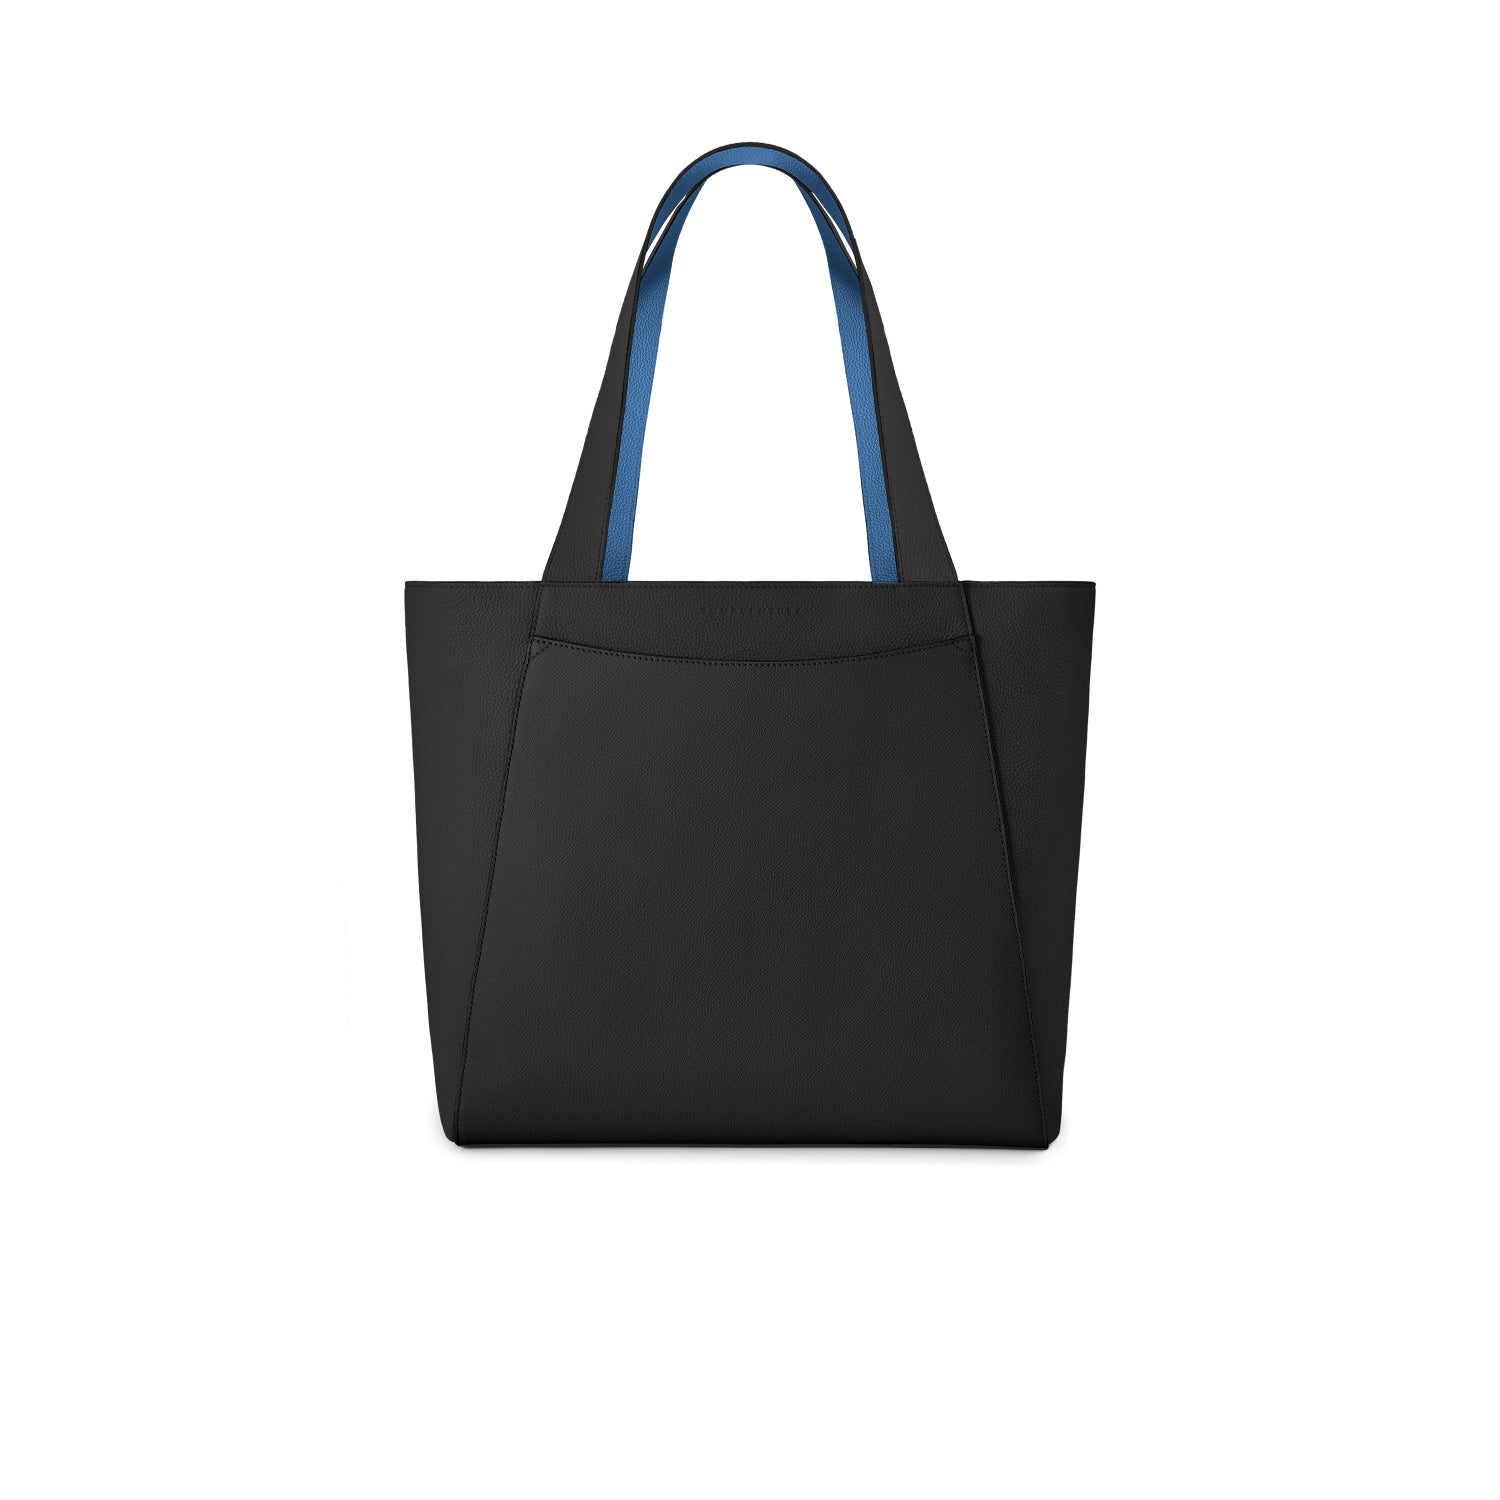 上質なレザーのレディースバッグ – イタリア(ミラノ)発の高級革製品の通販BONAVENTURA